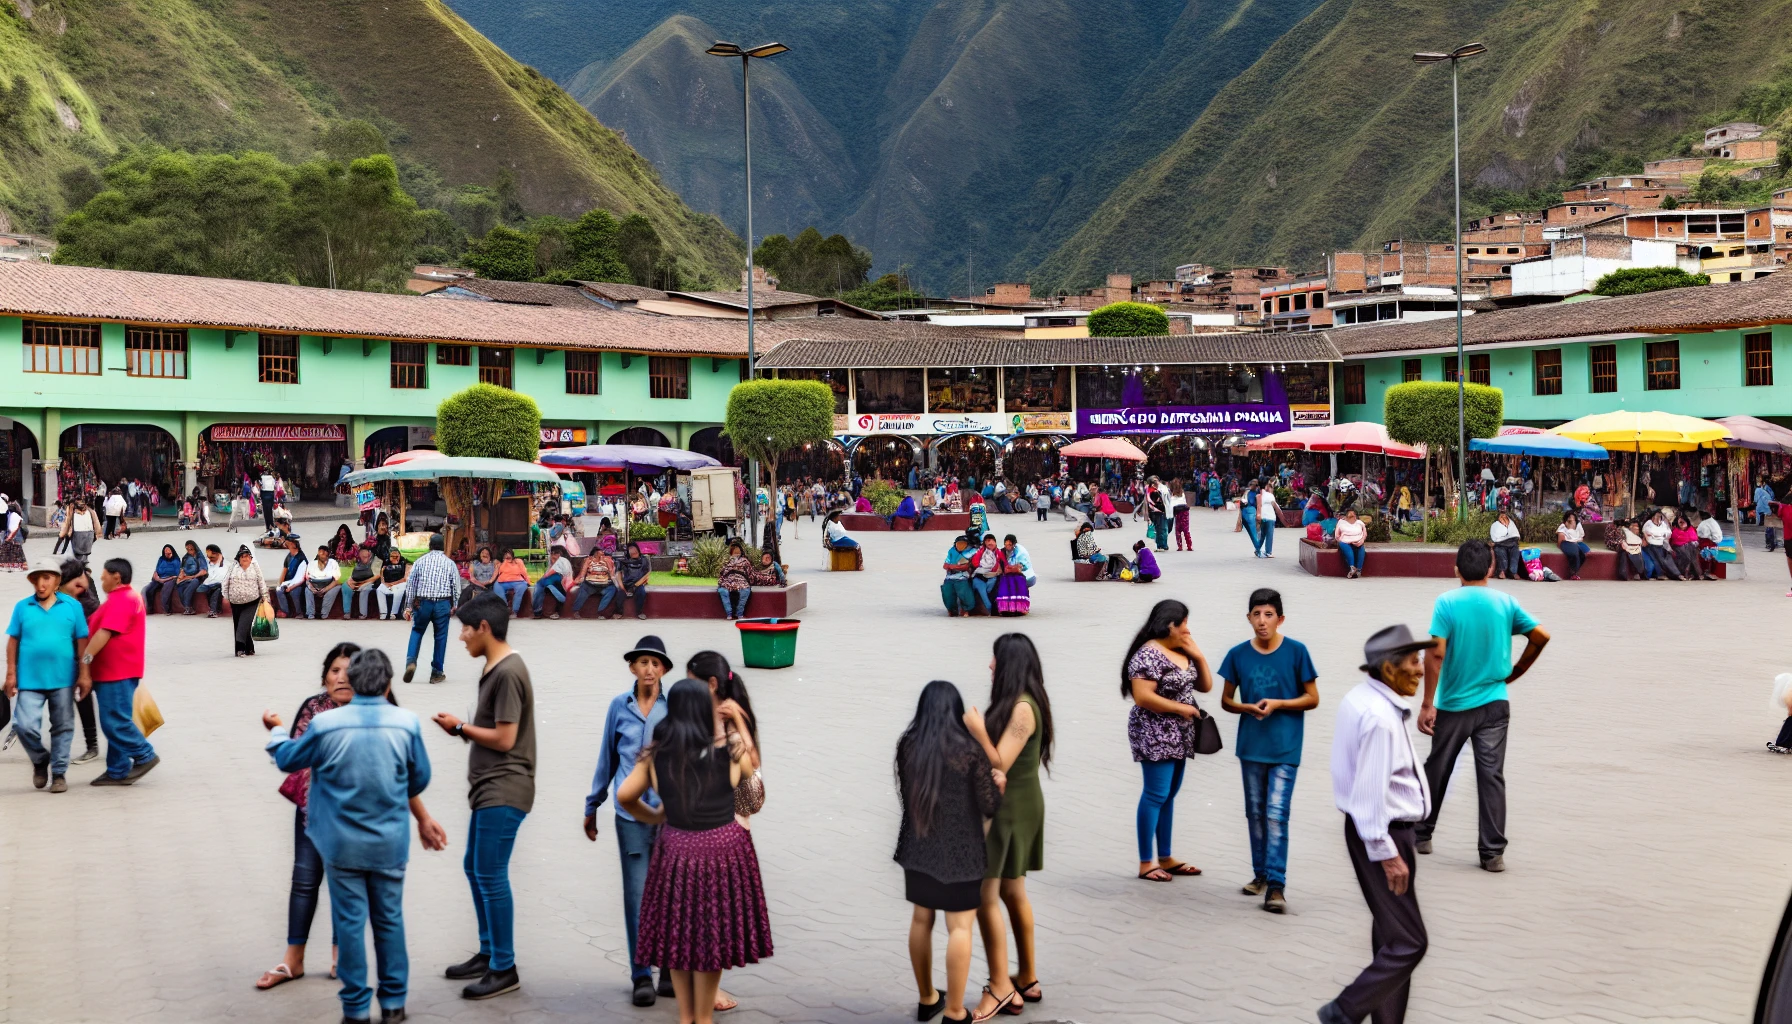 Bustling main square in Aguas Calientes with vibrant Mercado de Artesanía